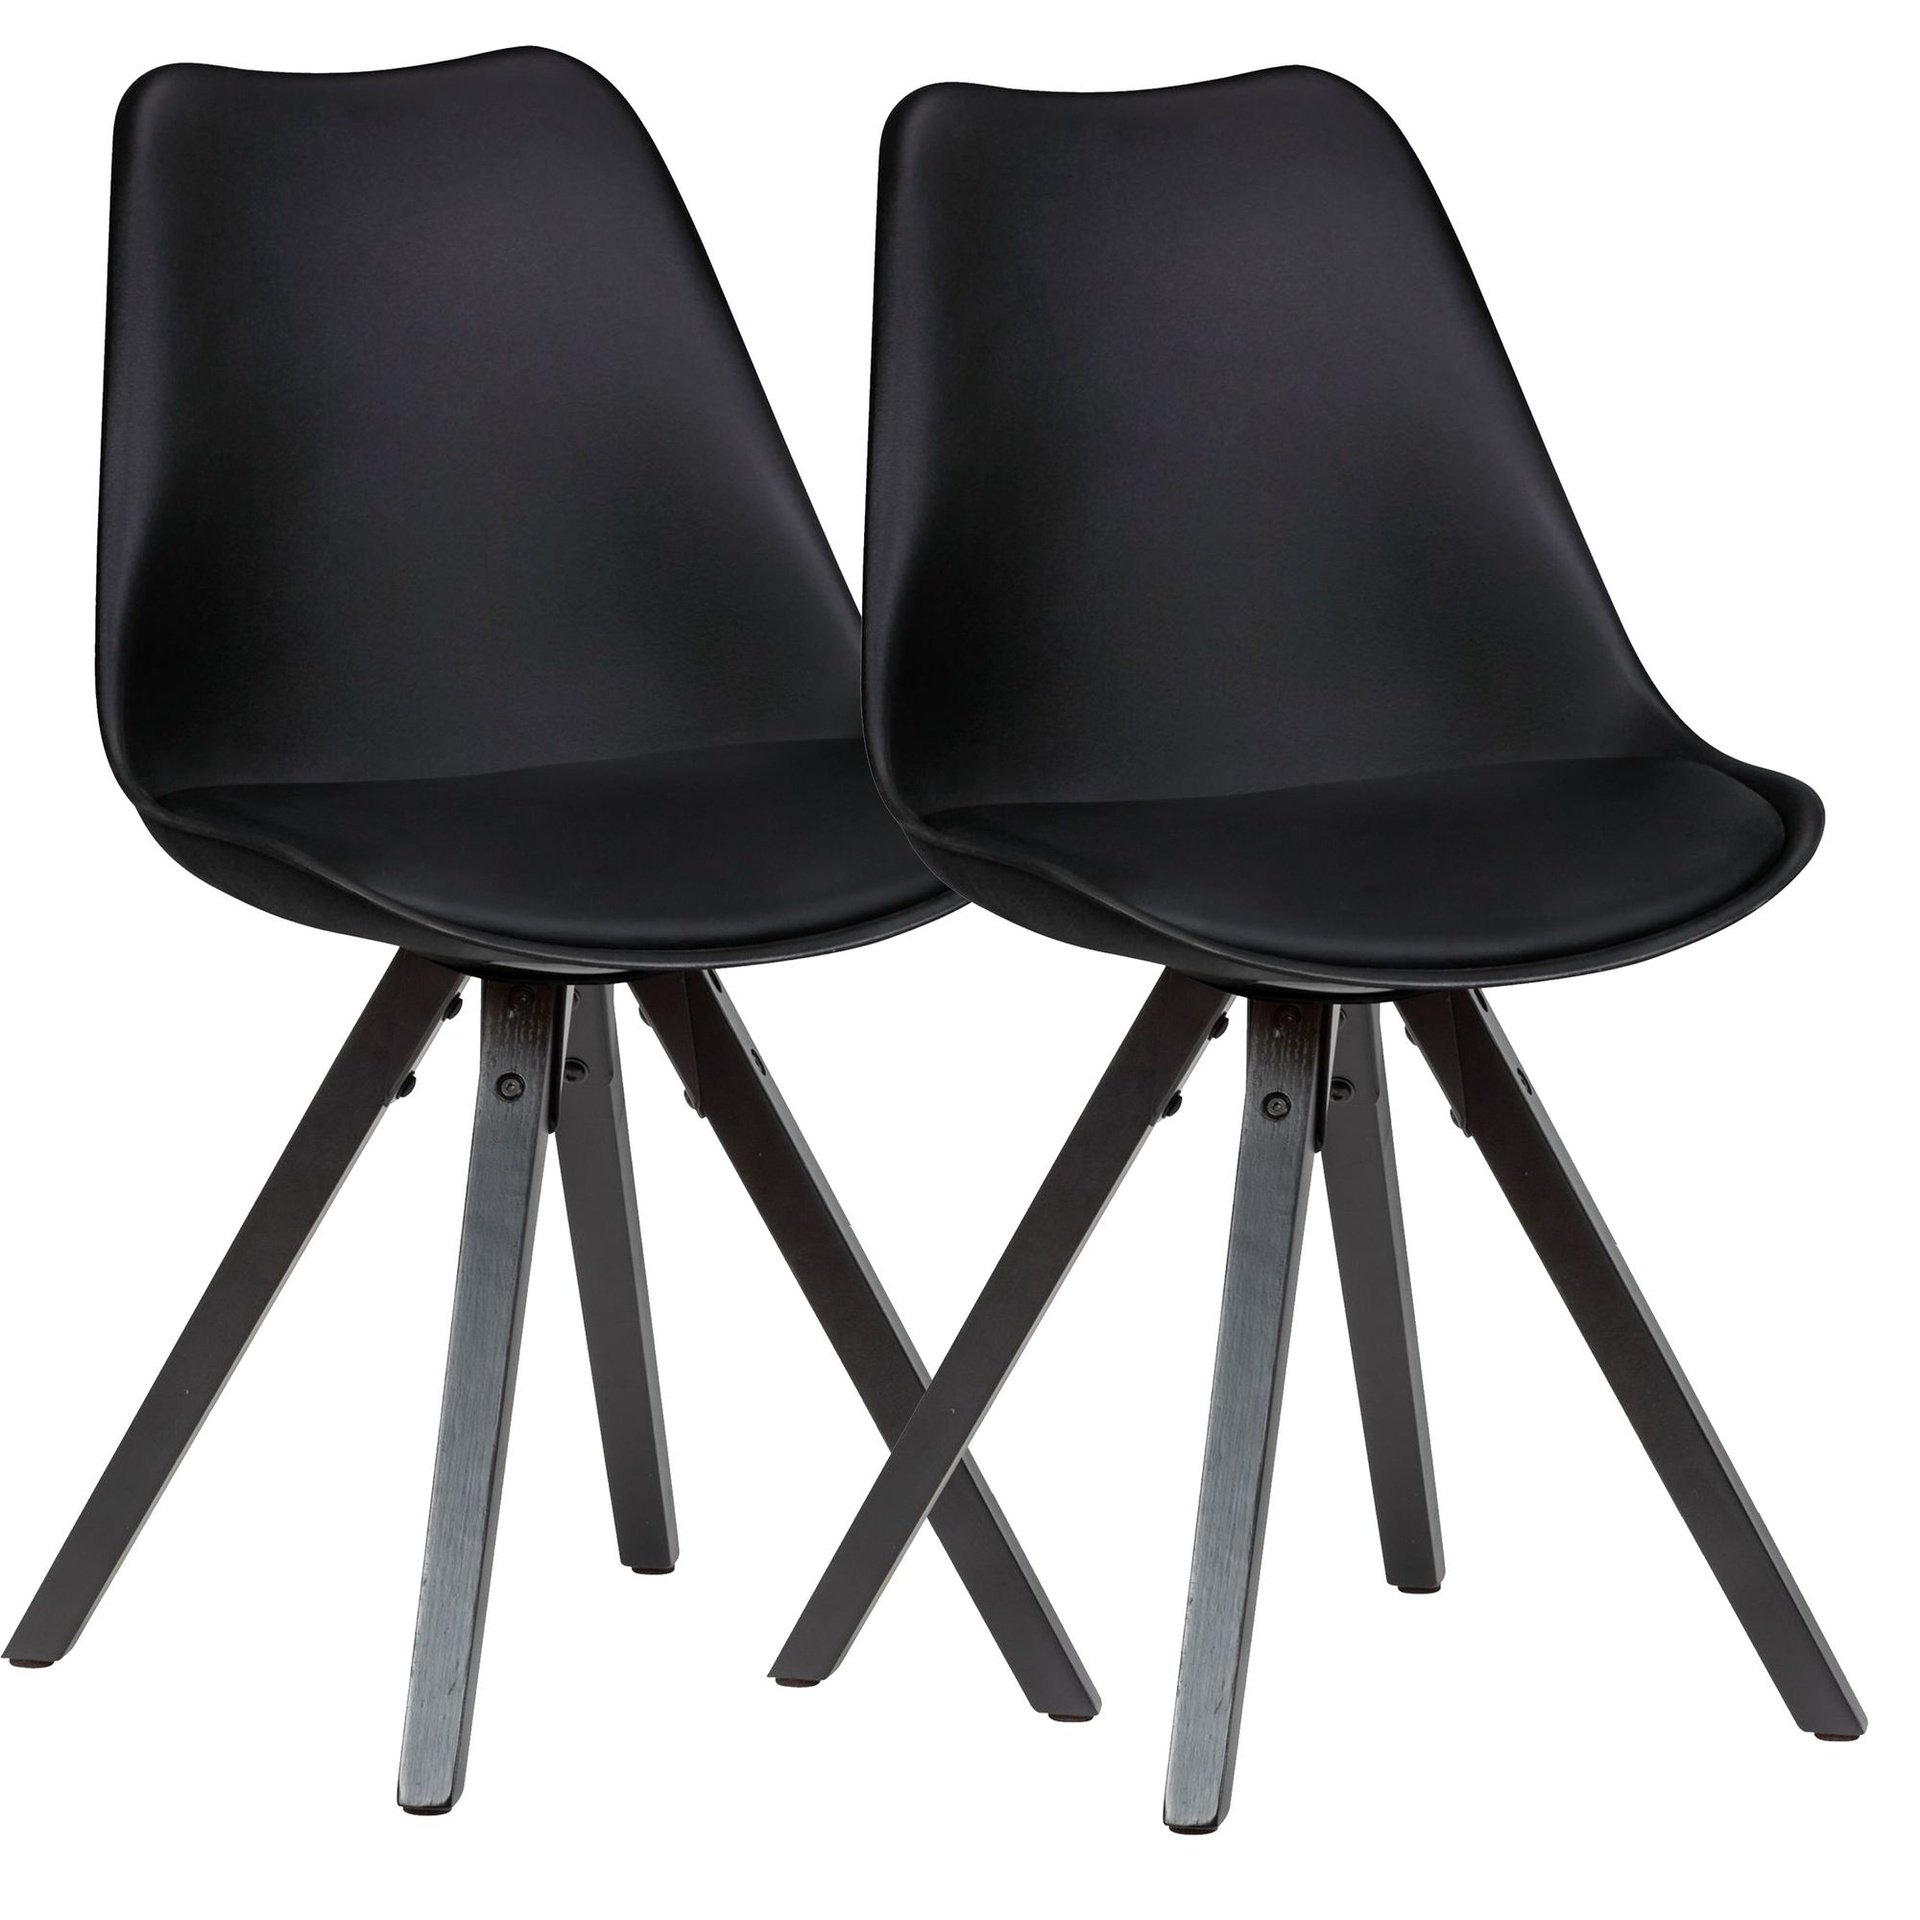 [A10021] Lot de 2 chaises de salle à manger rétro noires avec pieds noirs, dossier scandinave, rembourrées